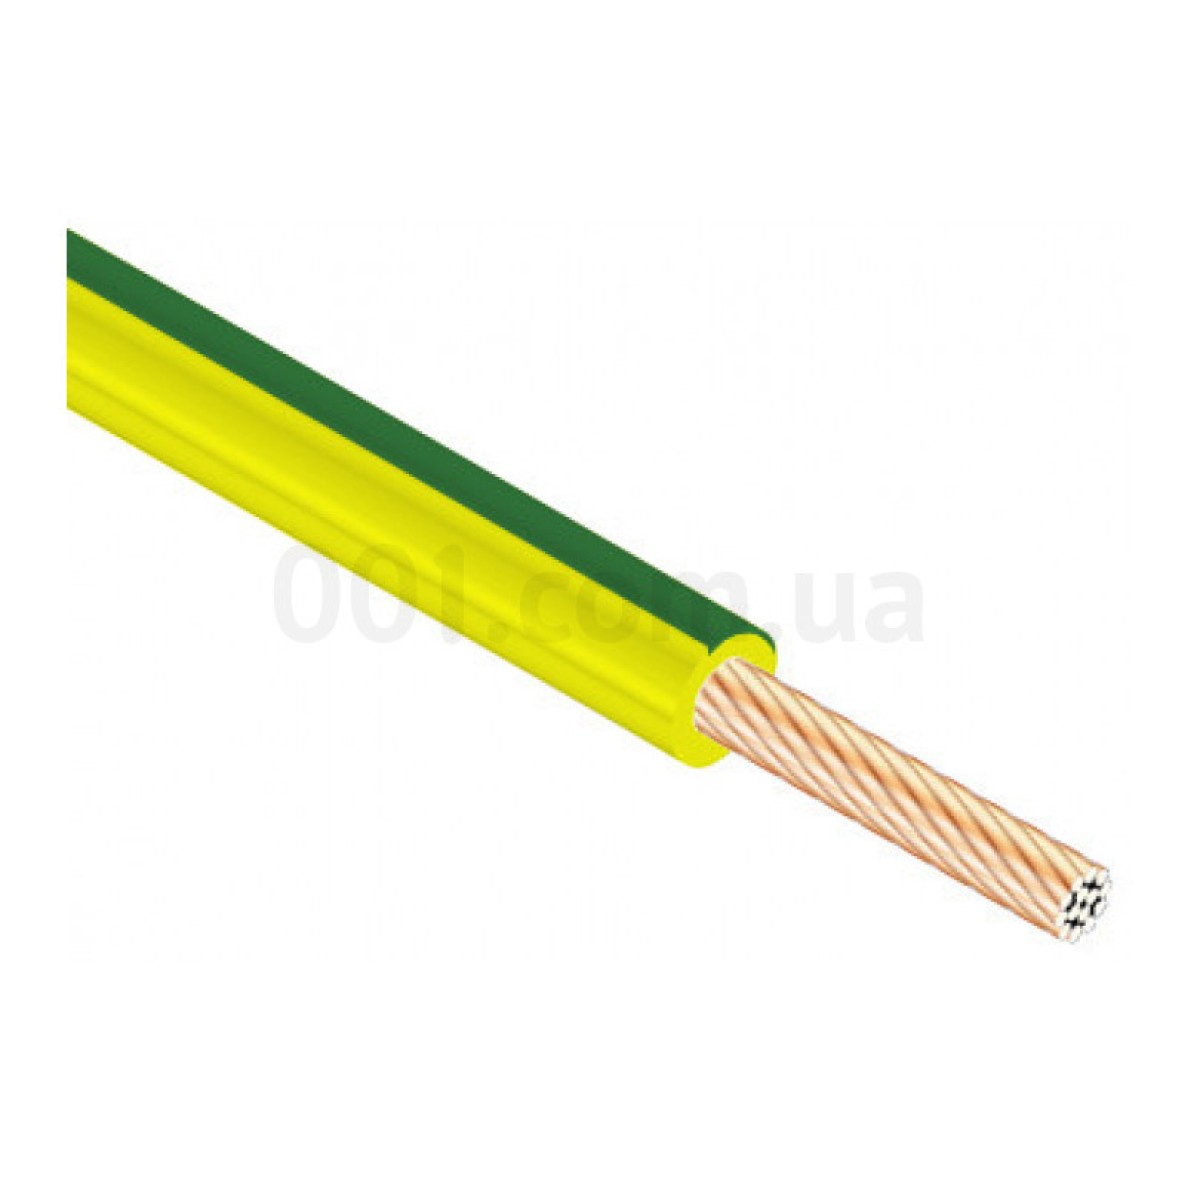 Провід установчий ПВ-3 1,5 мм² жовто-зелений з мідними жилами (ГОСТ), ЗЗКМ 256_253.jpg